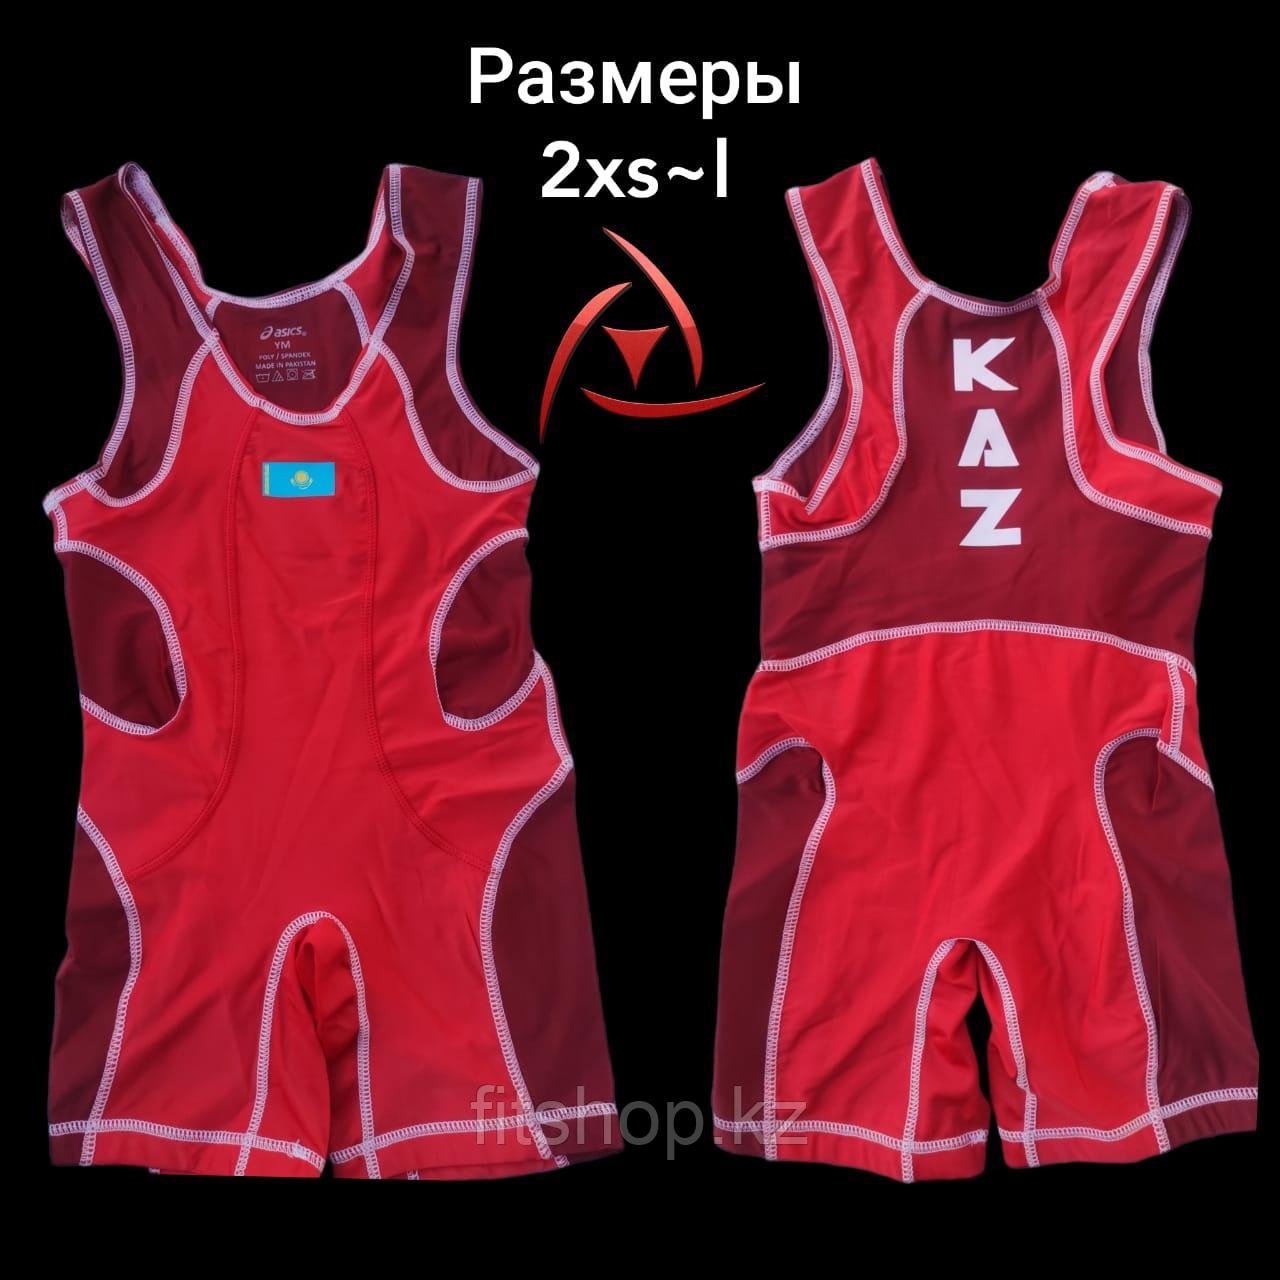 Трико борцовское для вольной и греко-римской борьбы, тяжело атлетическое  Казахстан (красное ,синее)